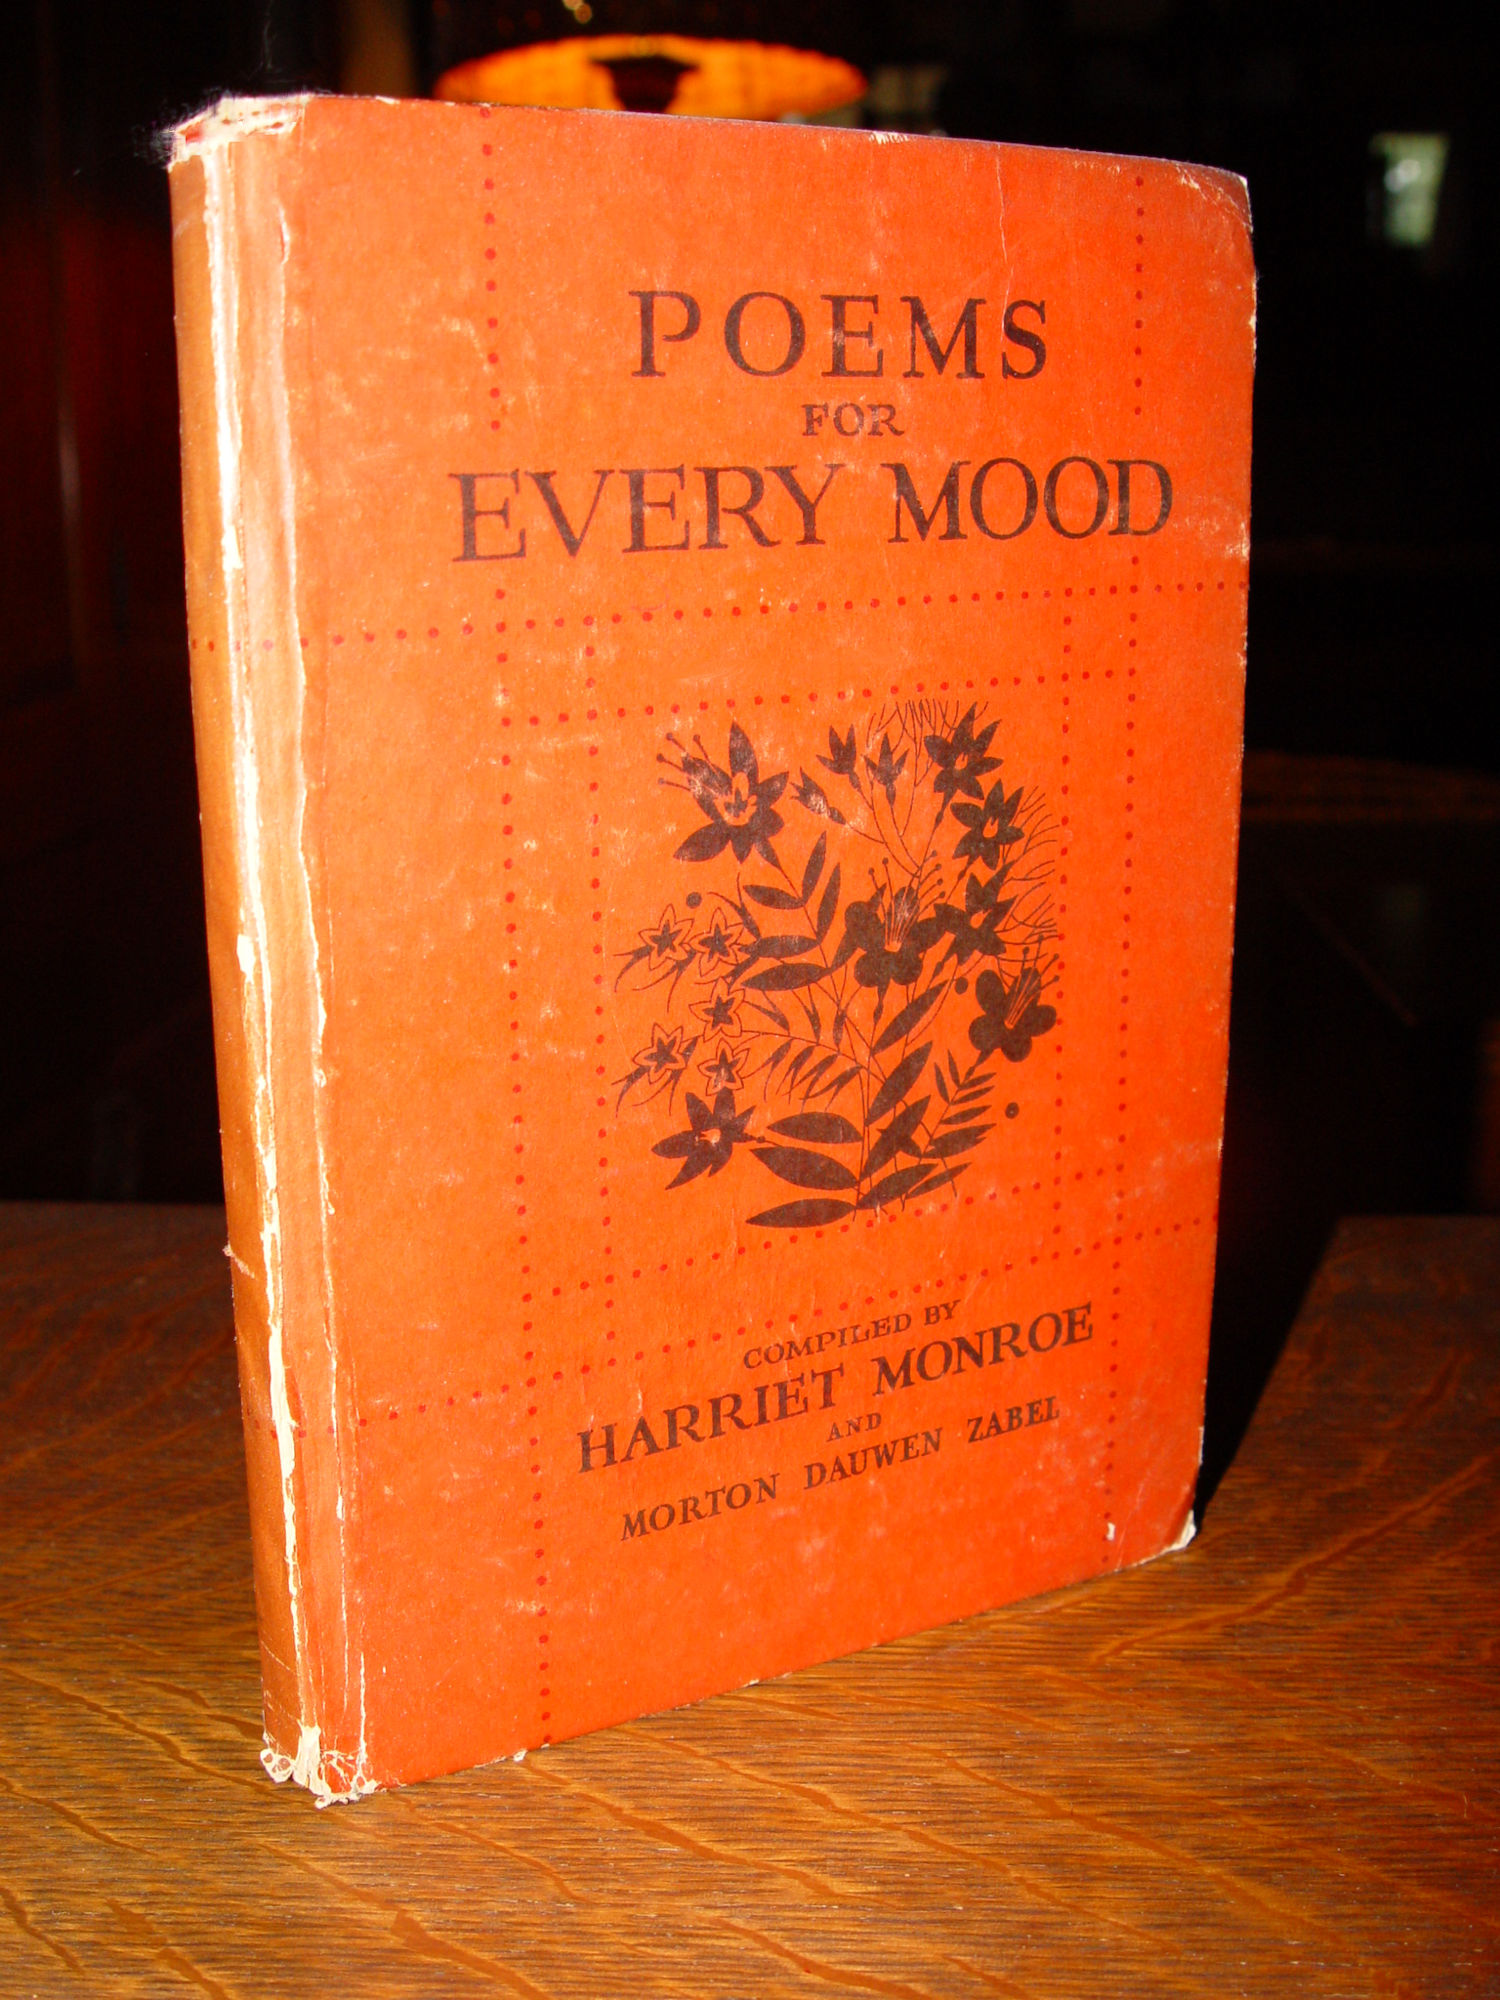 Poems for Every Mood 1933 by Harriet Monroe
                        & Morton Dauwen Zabel